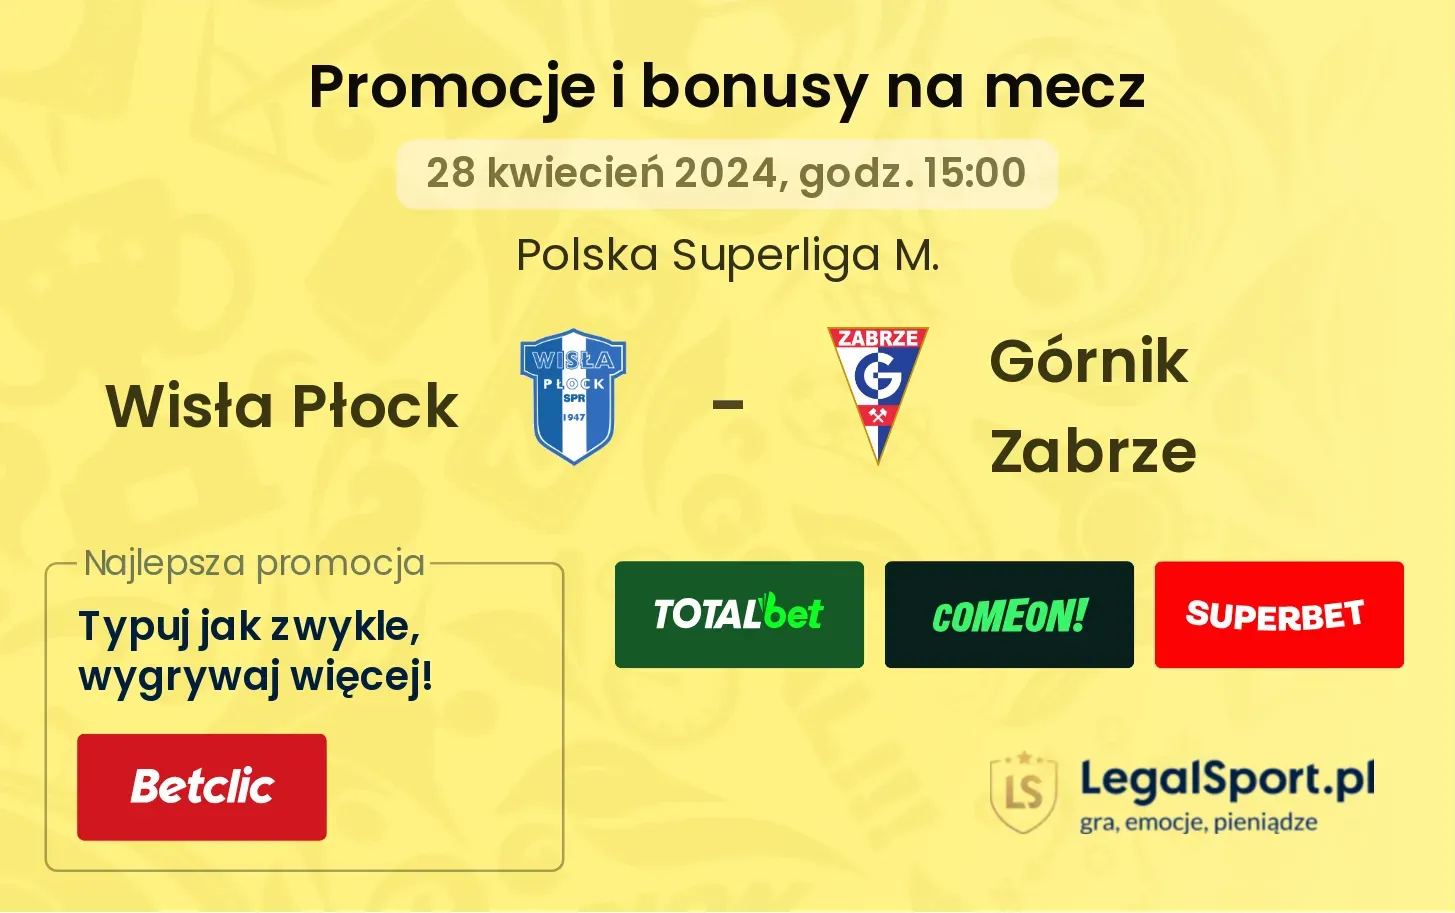 Wisła Płock - Górnik Zabrze promocje bonusy na mecz